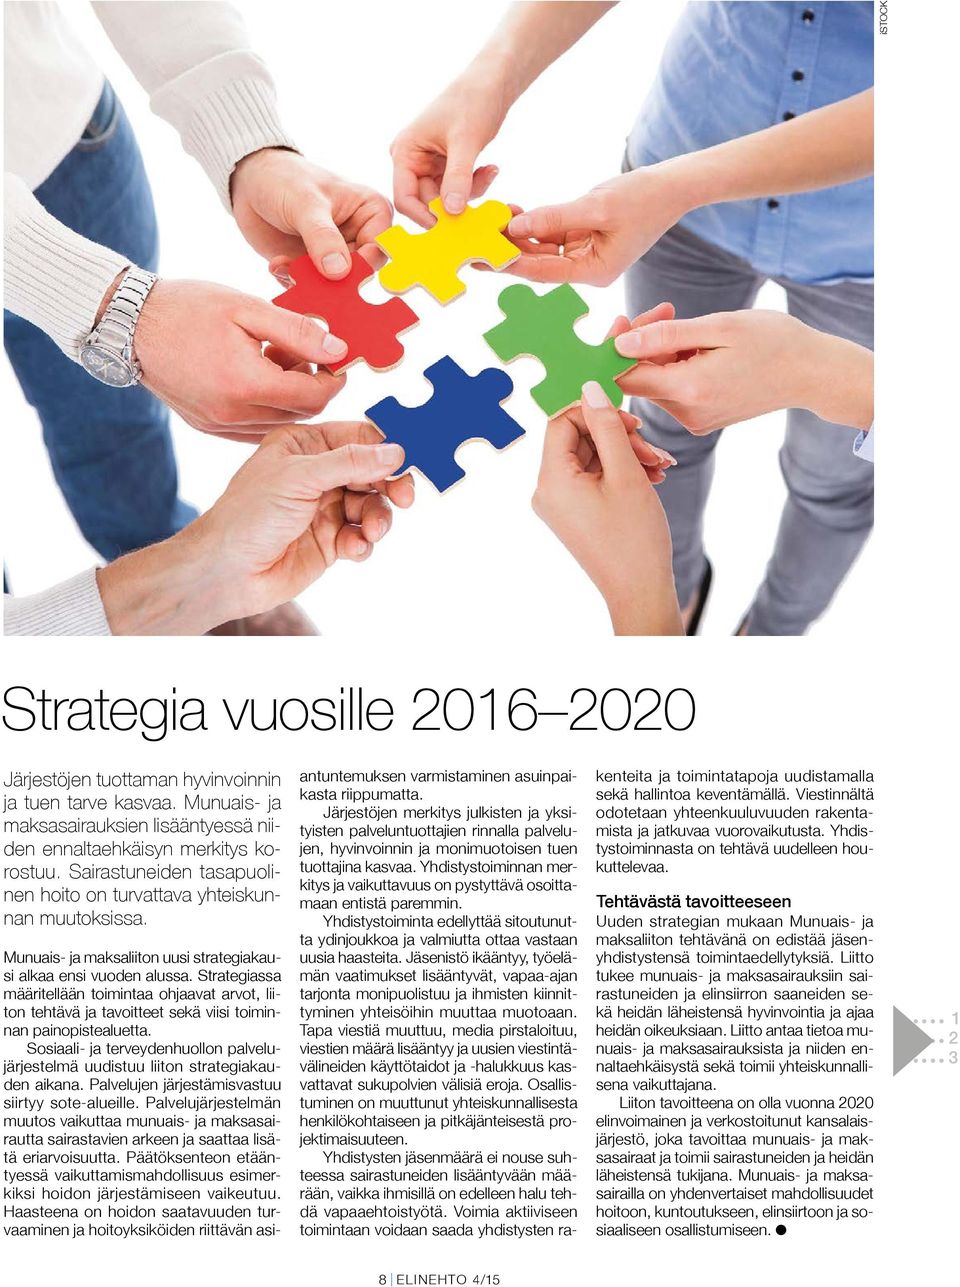 Strategiassa määritellään toimintaa ohjaavat arvot, liiton tehtävä ja tavoitteet sekä viisi toiminnan painopistealuetta.